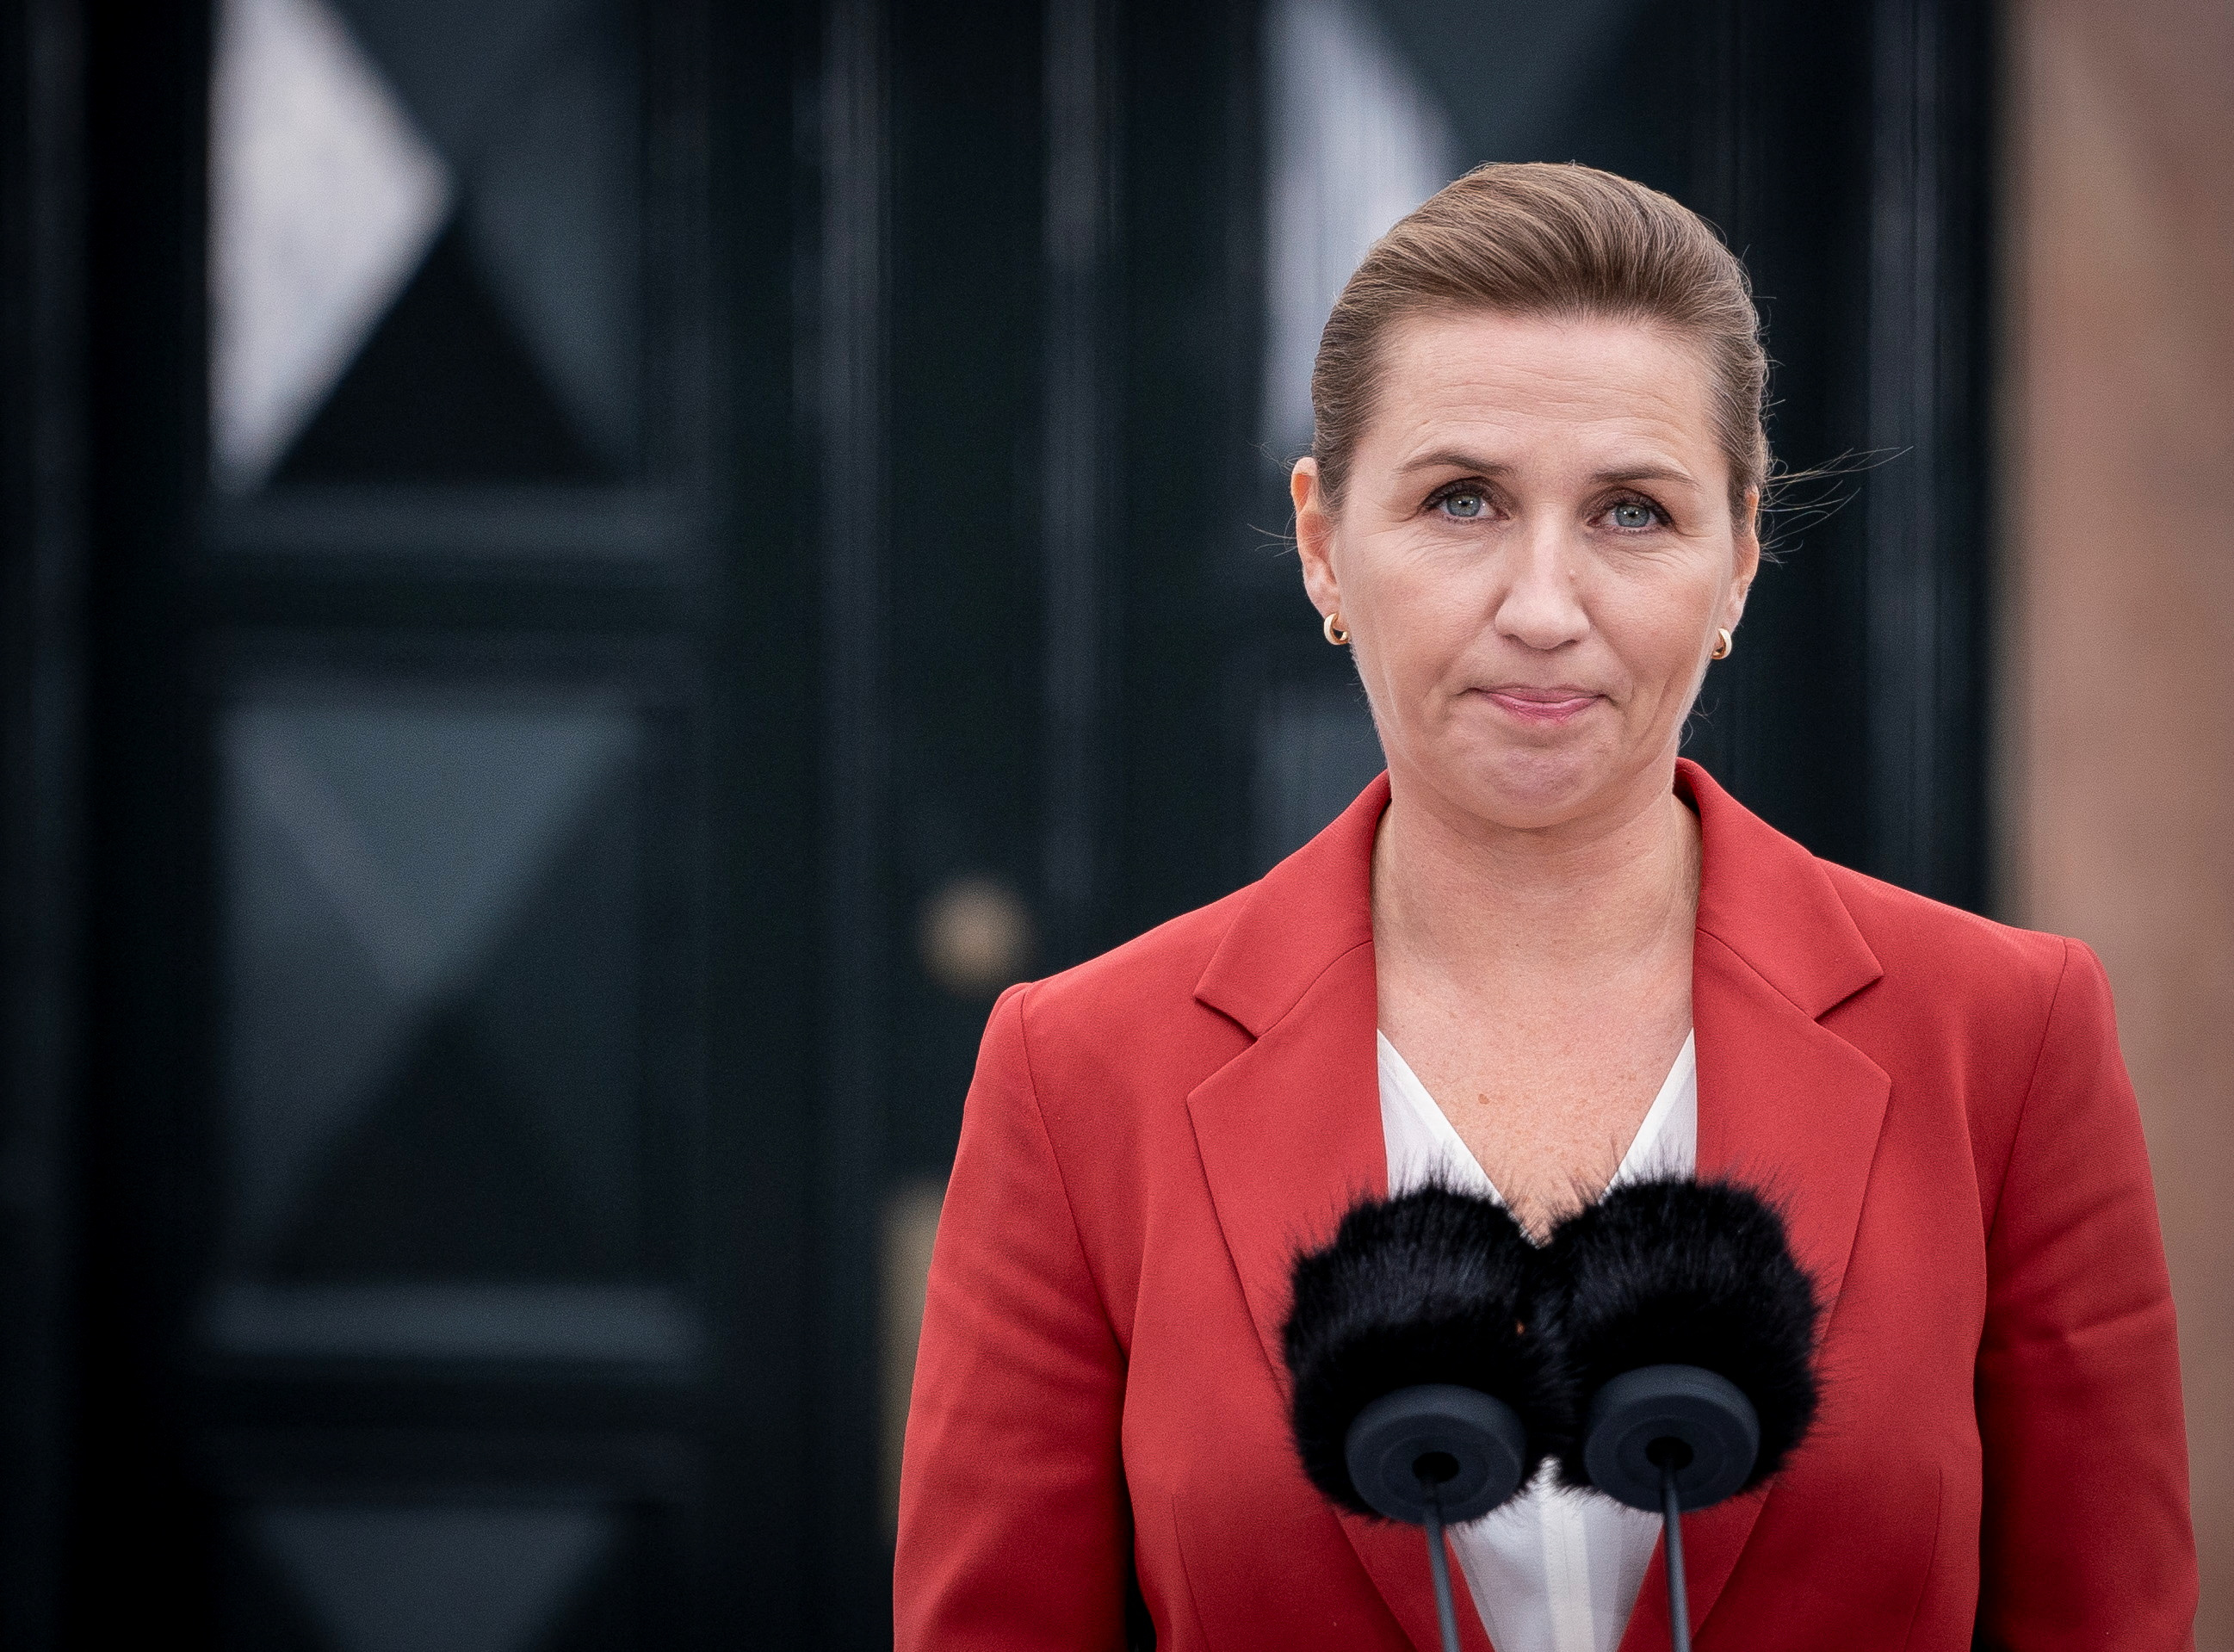 Con la primera ministra en vuelta en una polémica por el sacrificio de millones de visones, Dinamarca anunció elección general anticipada